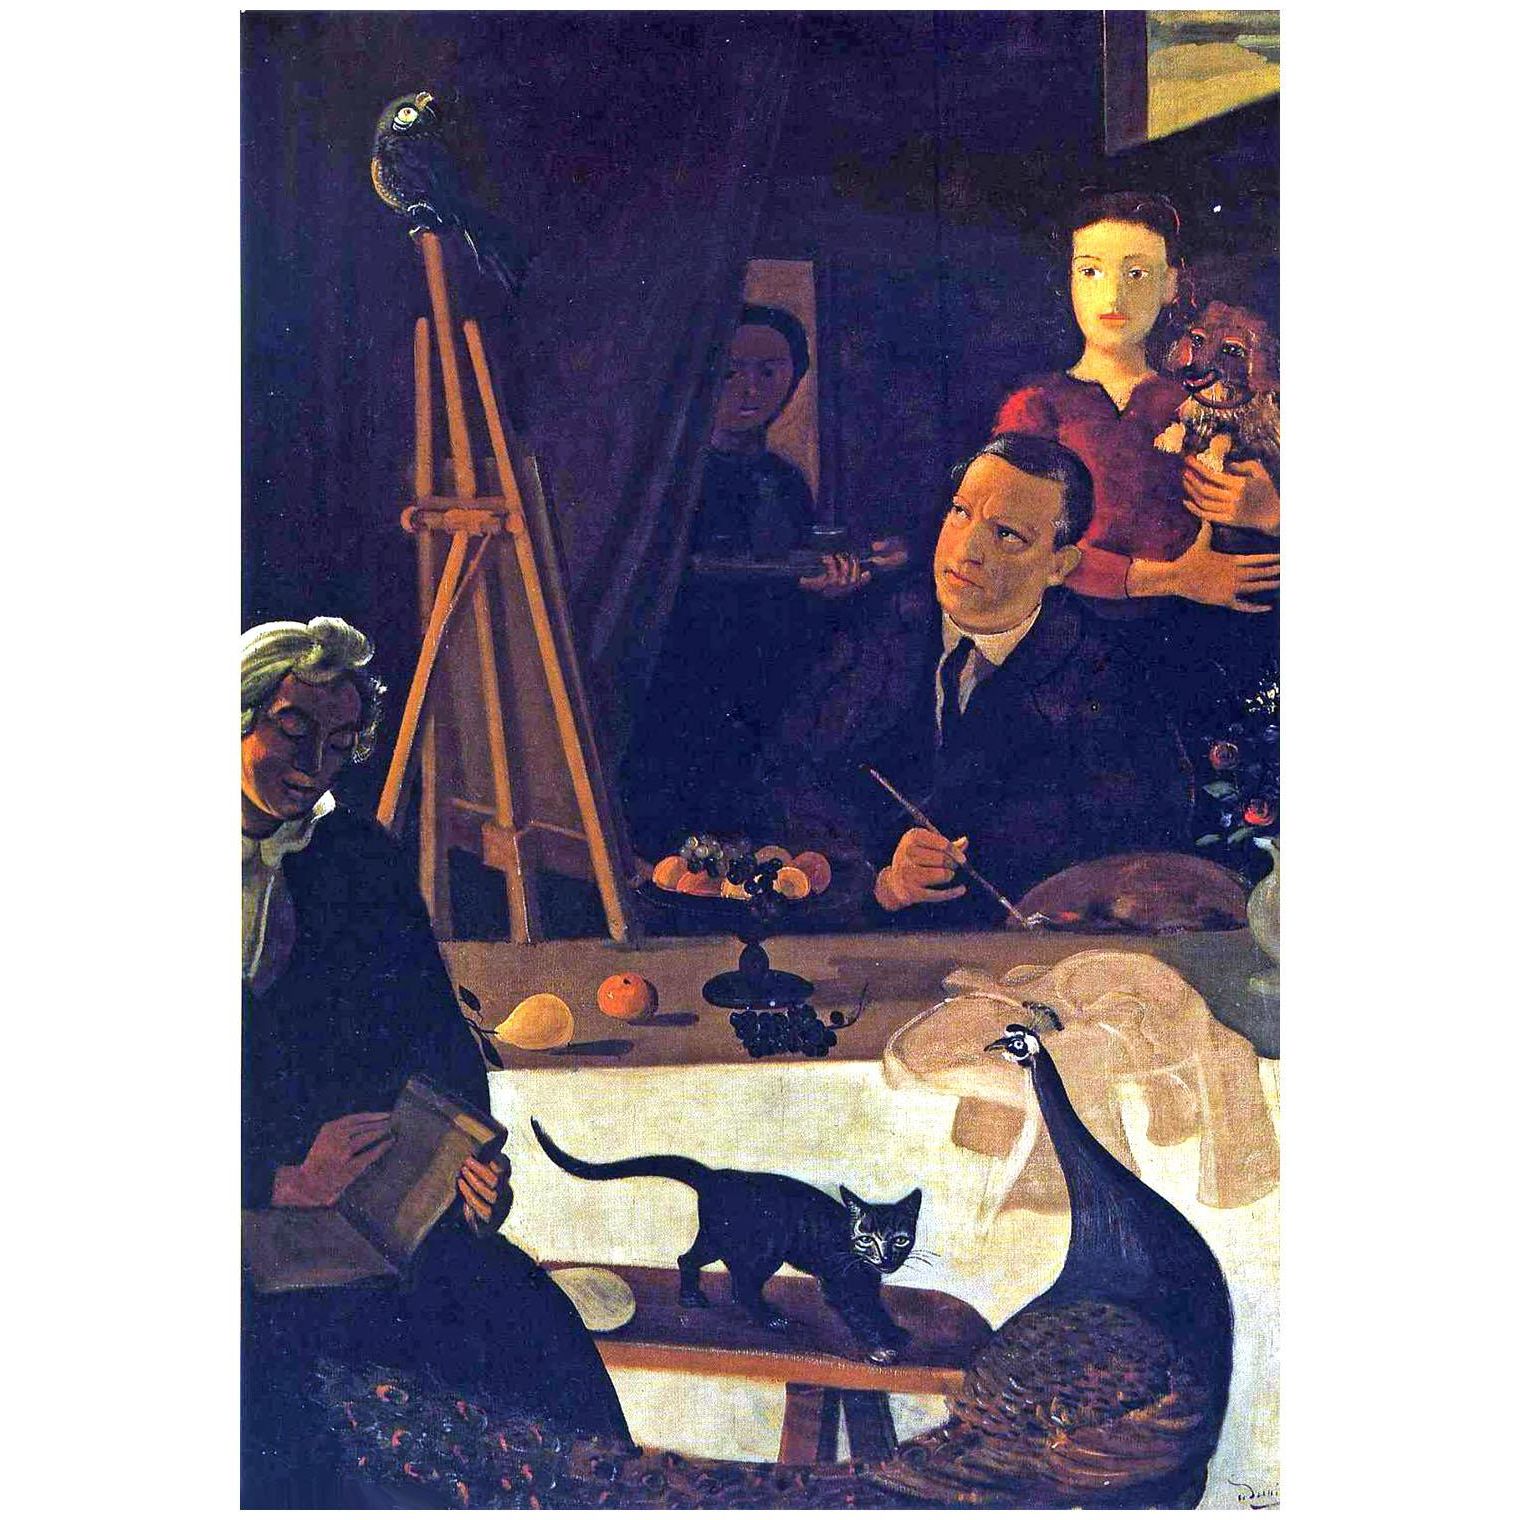 Andre Derain. Le Peintre et sa famille. 1939. Tate Gallery